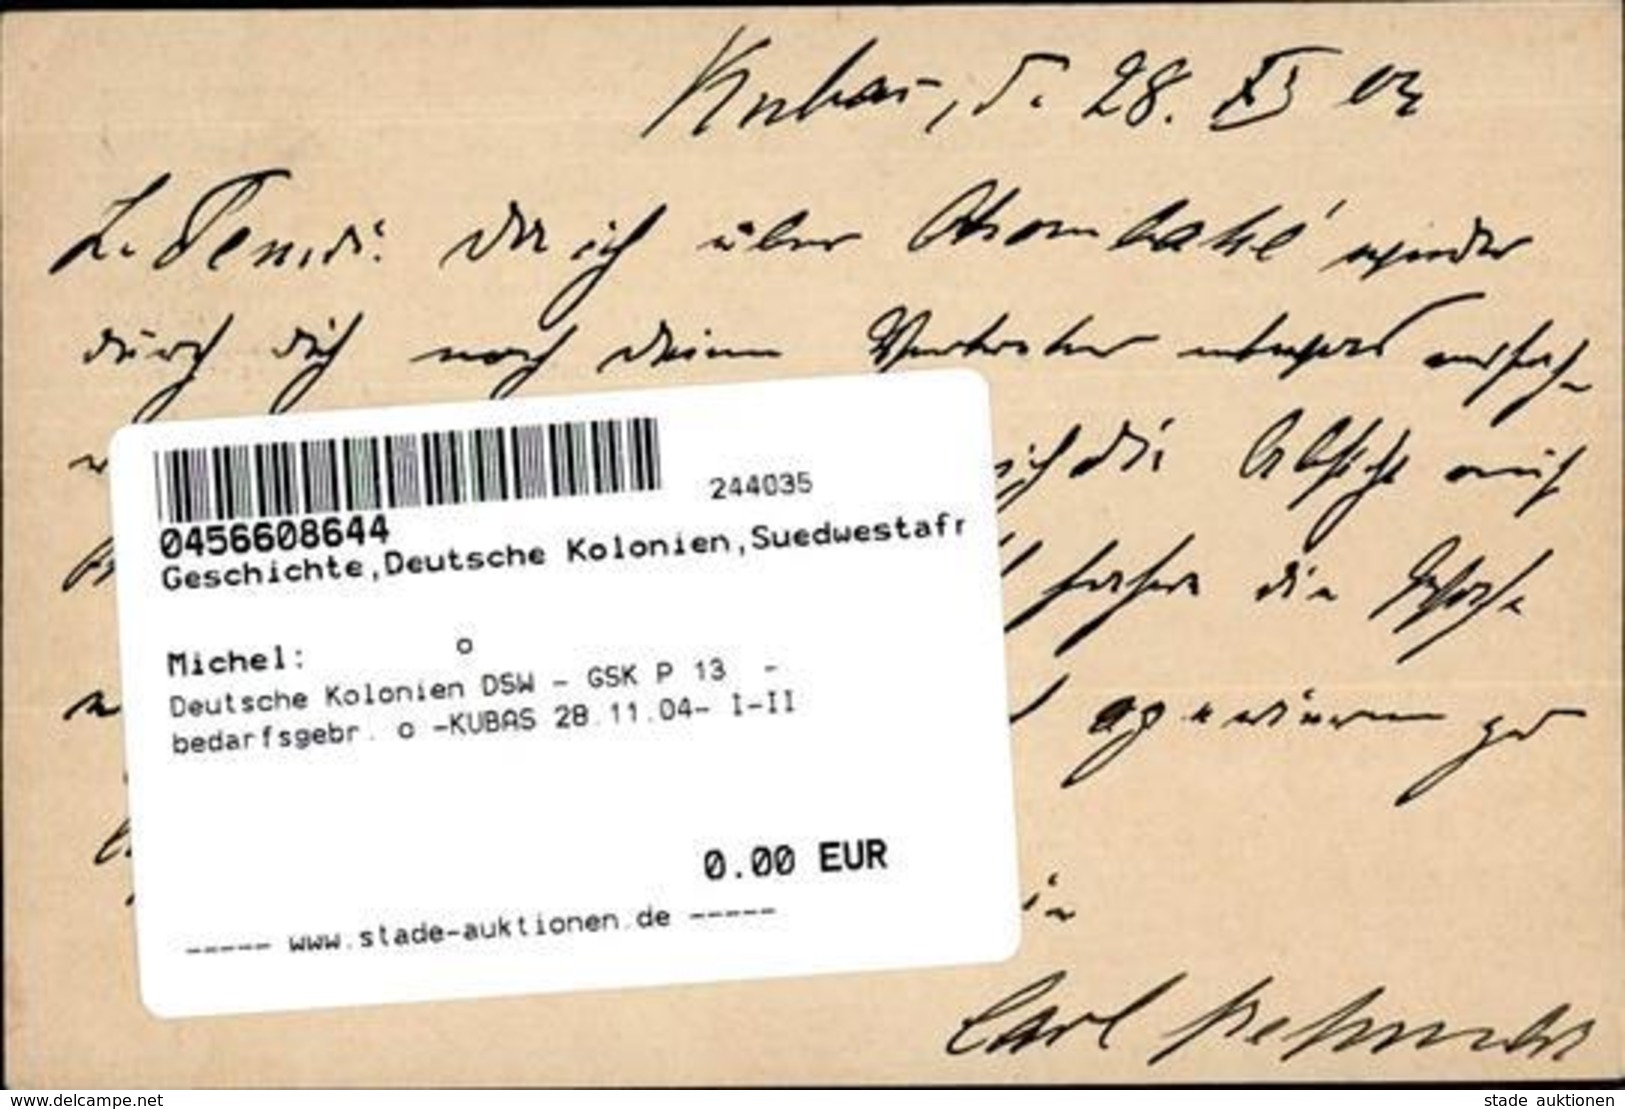 Deutsche Kolonien DSW - GSK P 13  - Bedarfsgebr. O -KUBAS 28.11.04- I-II Colonies - Histoire